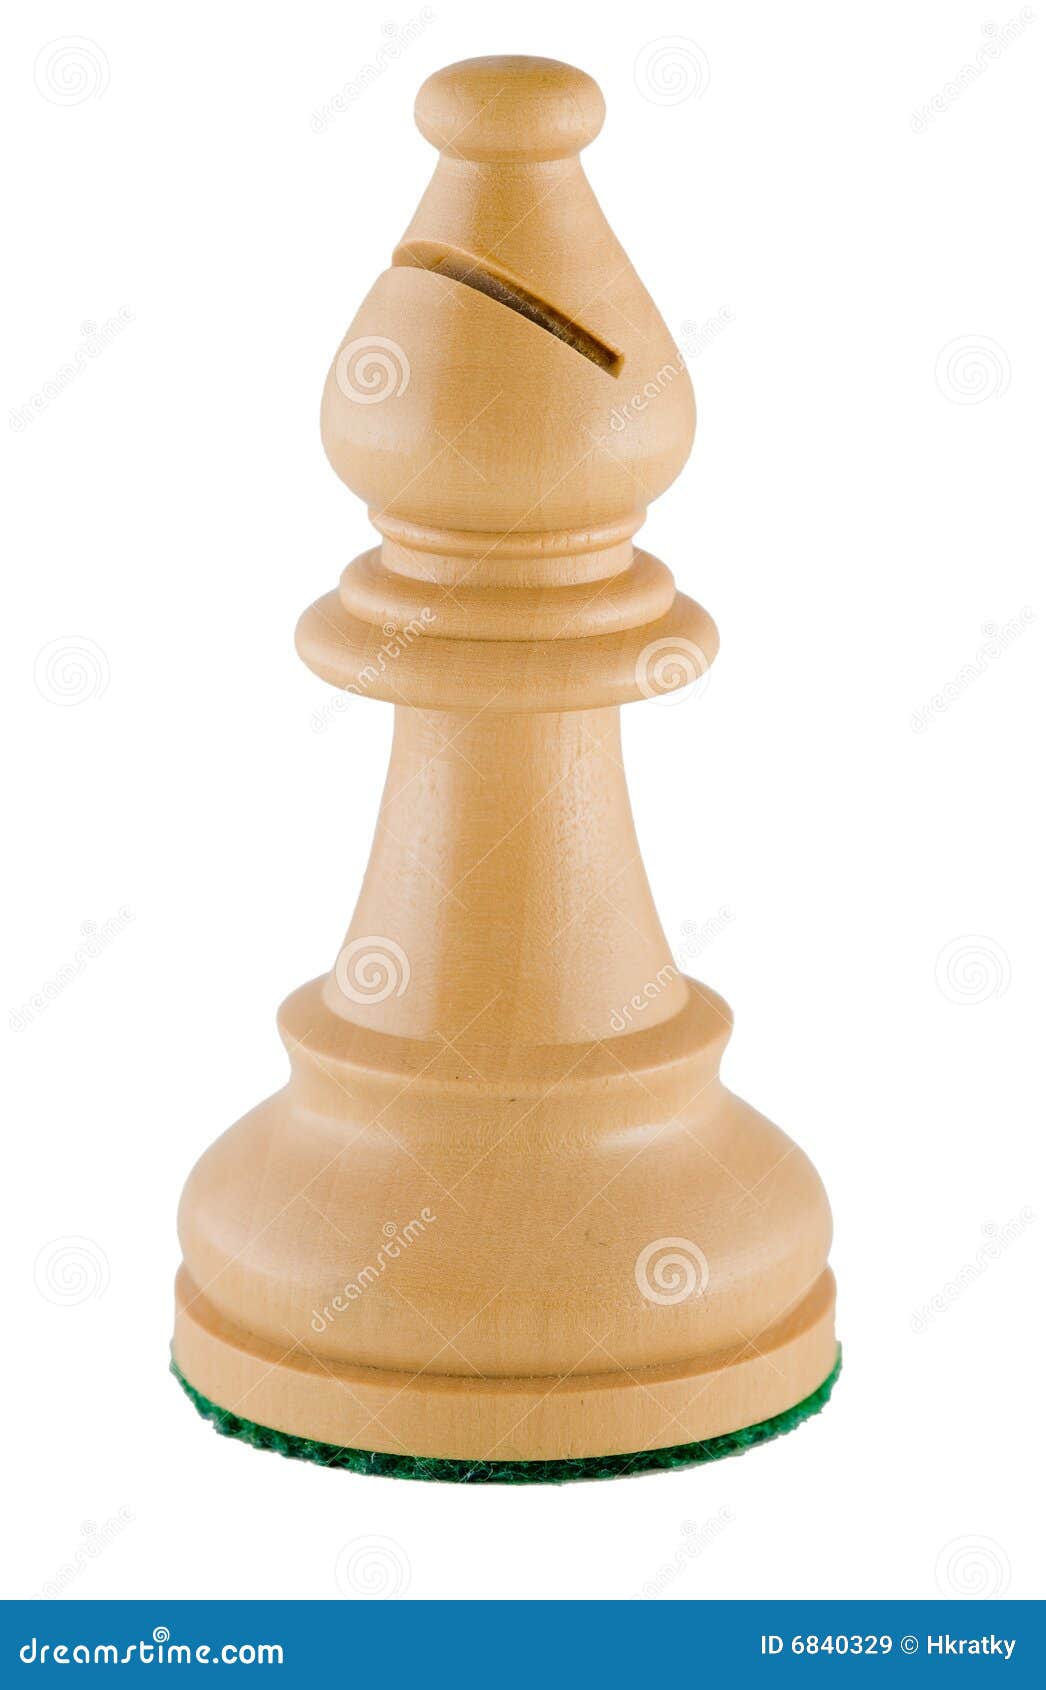 chess piece - white bishop